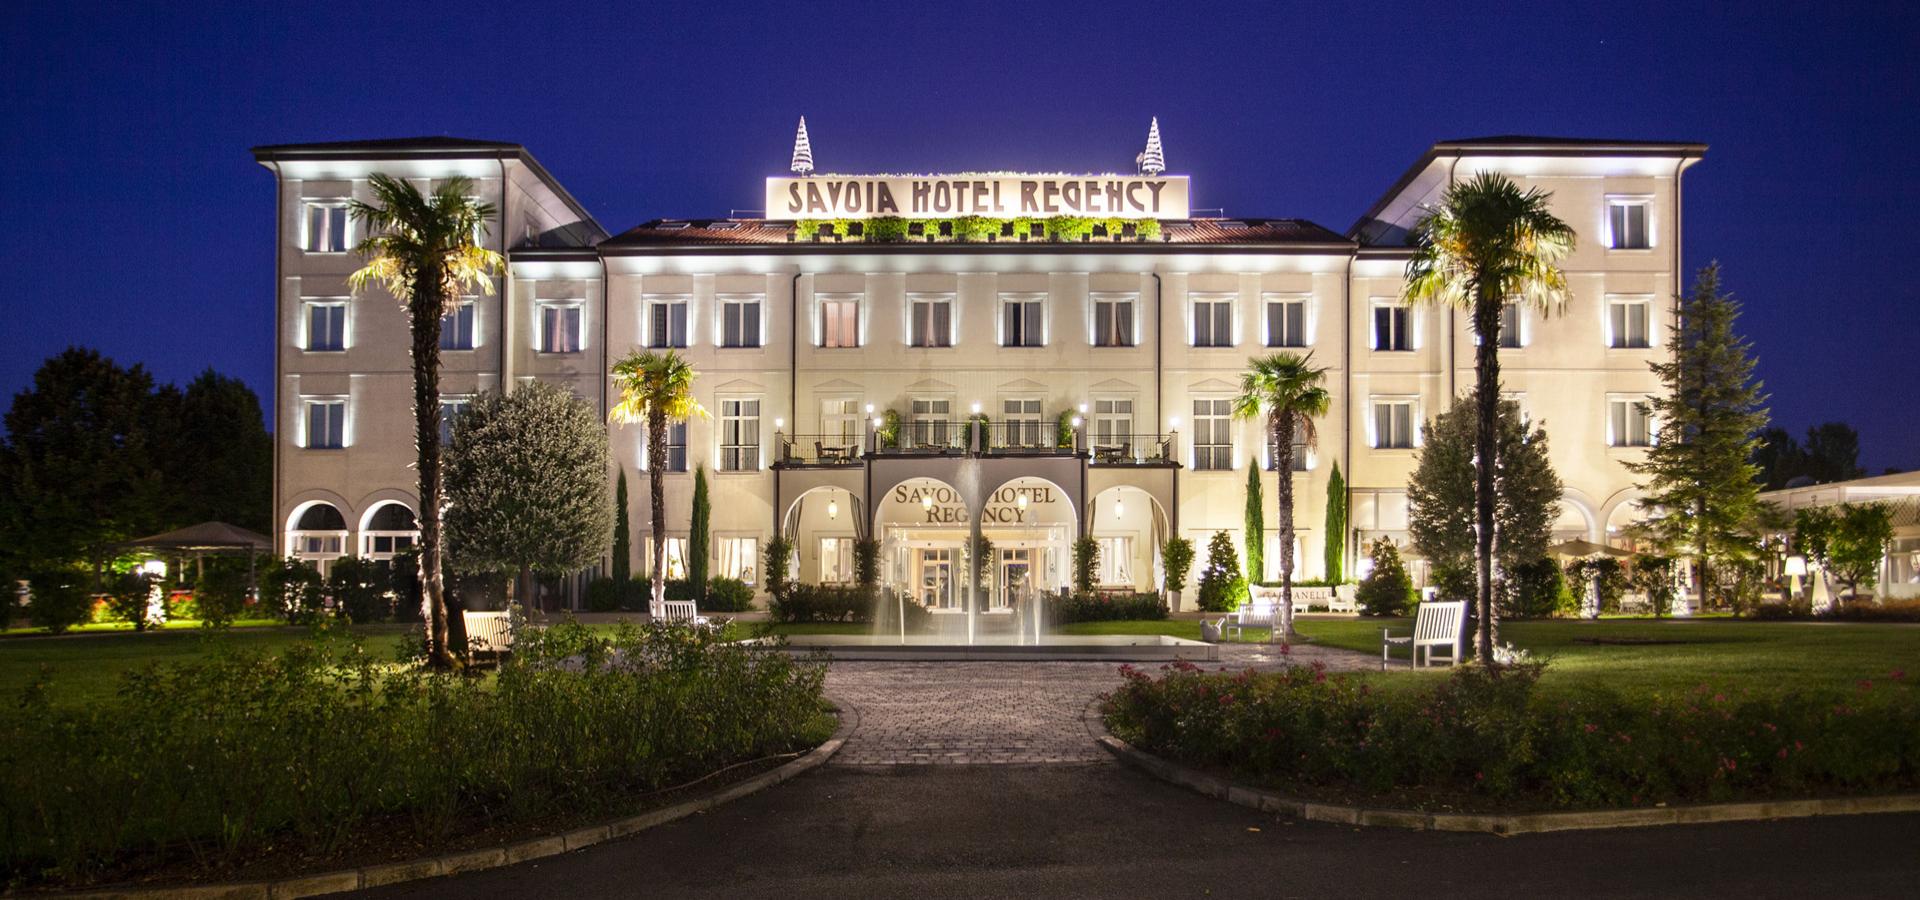 Elegante hotel illuminato di notte con palme e giardino curato.